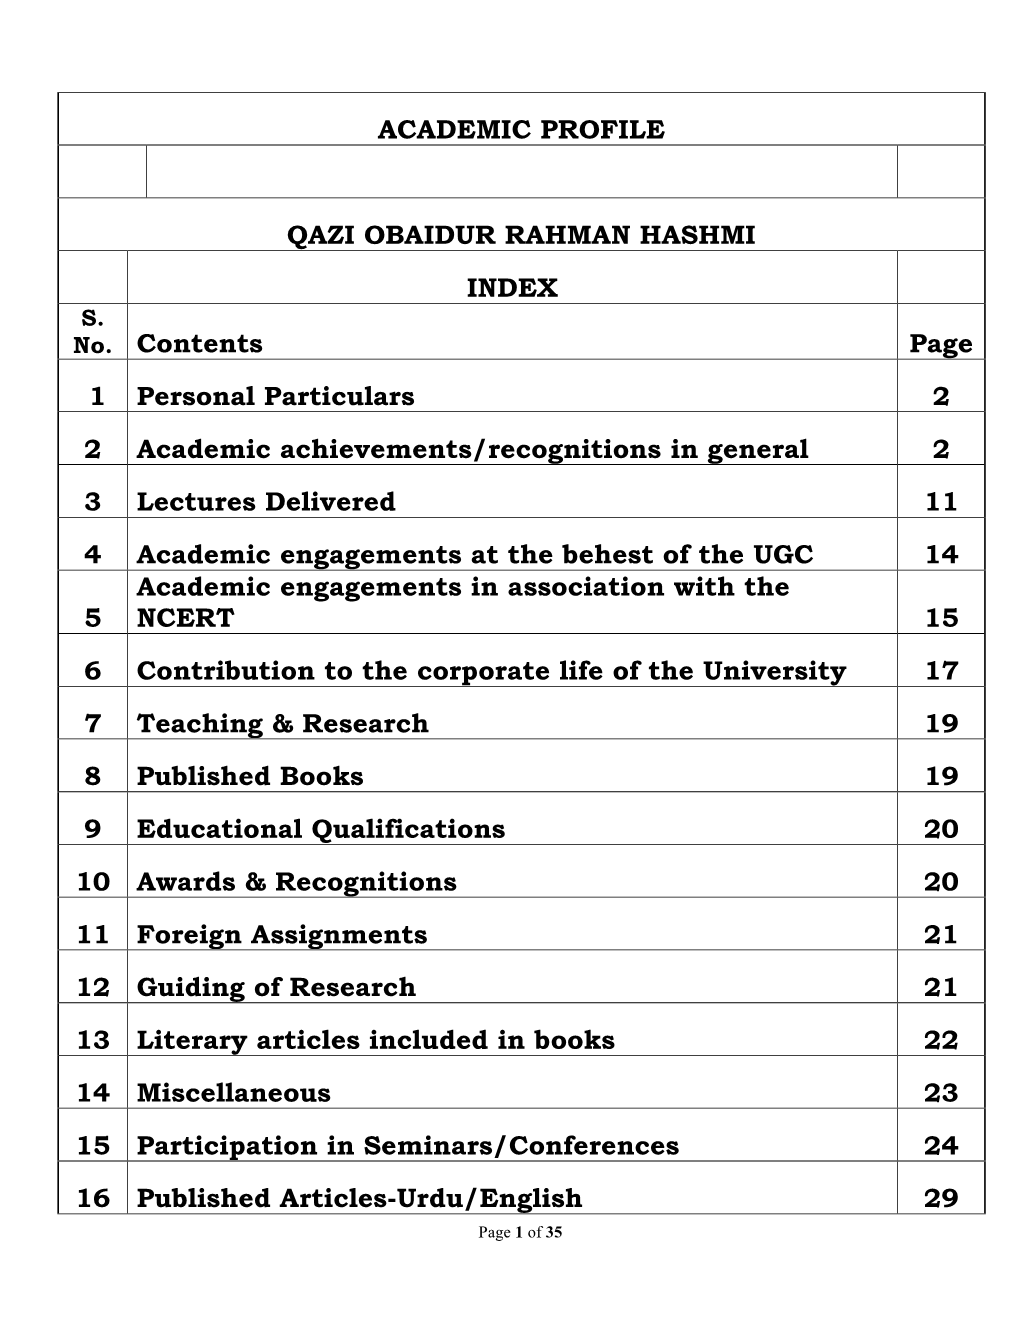 Academic Profile Qazi Obaidur Rahman Hashmi Index